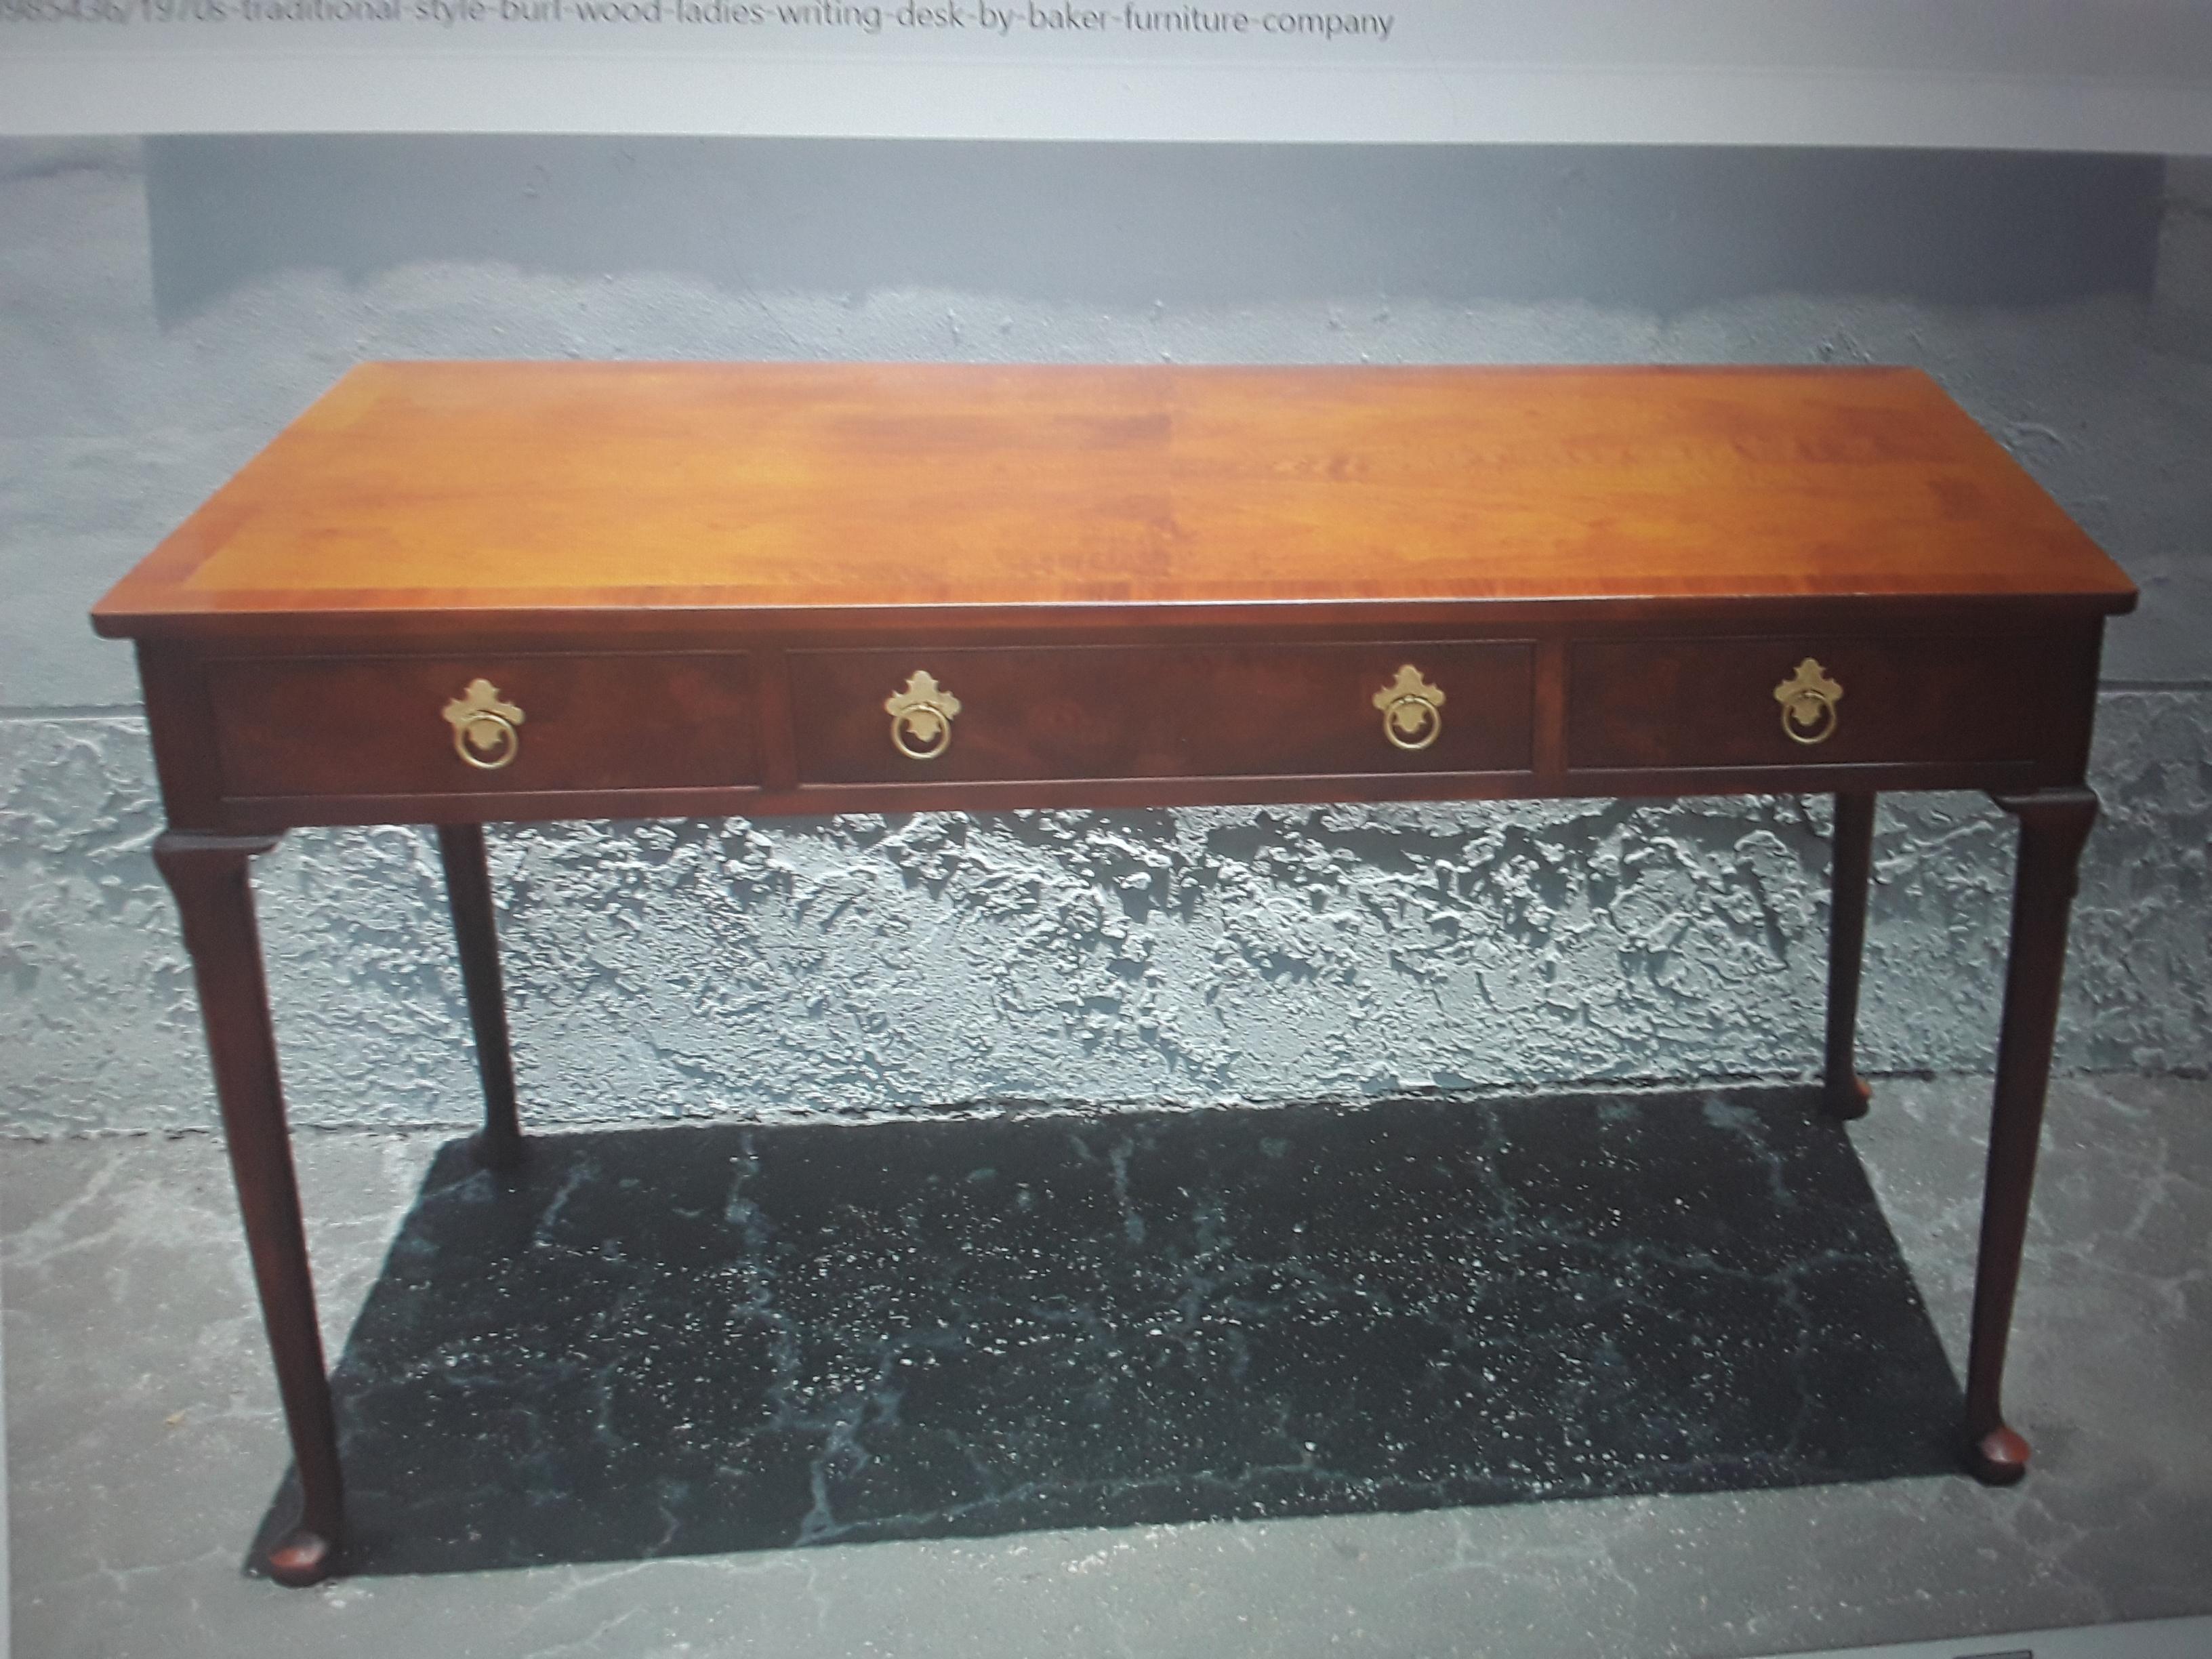 Traditioneller Damen-Schreibtisch aus Wurzelholz von Baker Furniture Company, 1970er Jahre 3